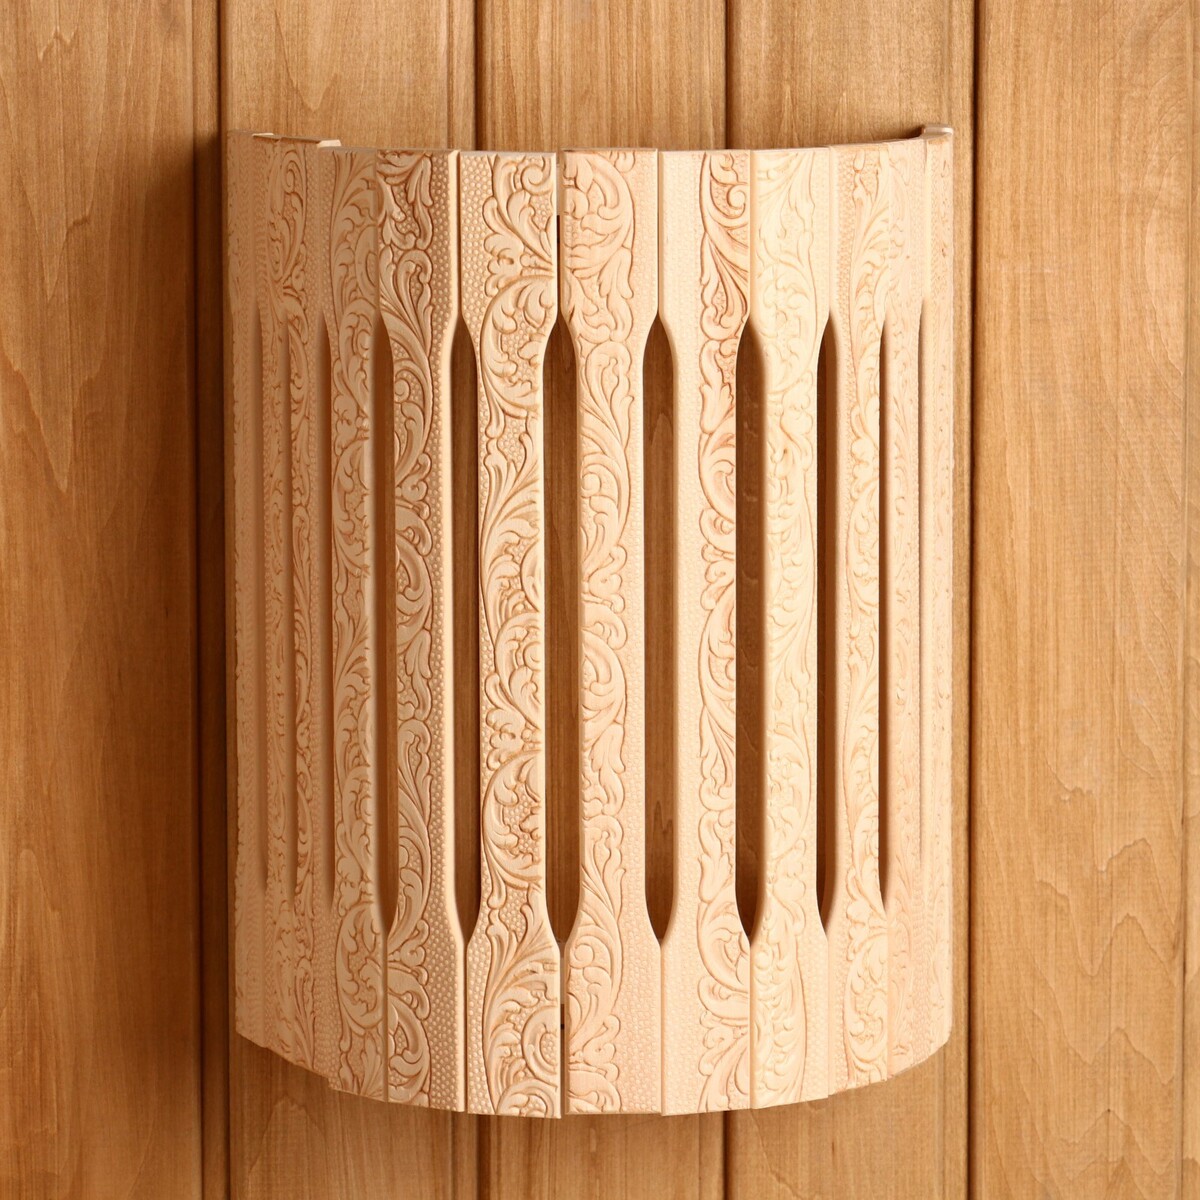 Абажур деревянный, полукруглый антисептик русские узоры огнебио для дерева 2 гр 10 л